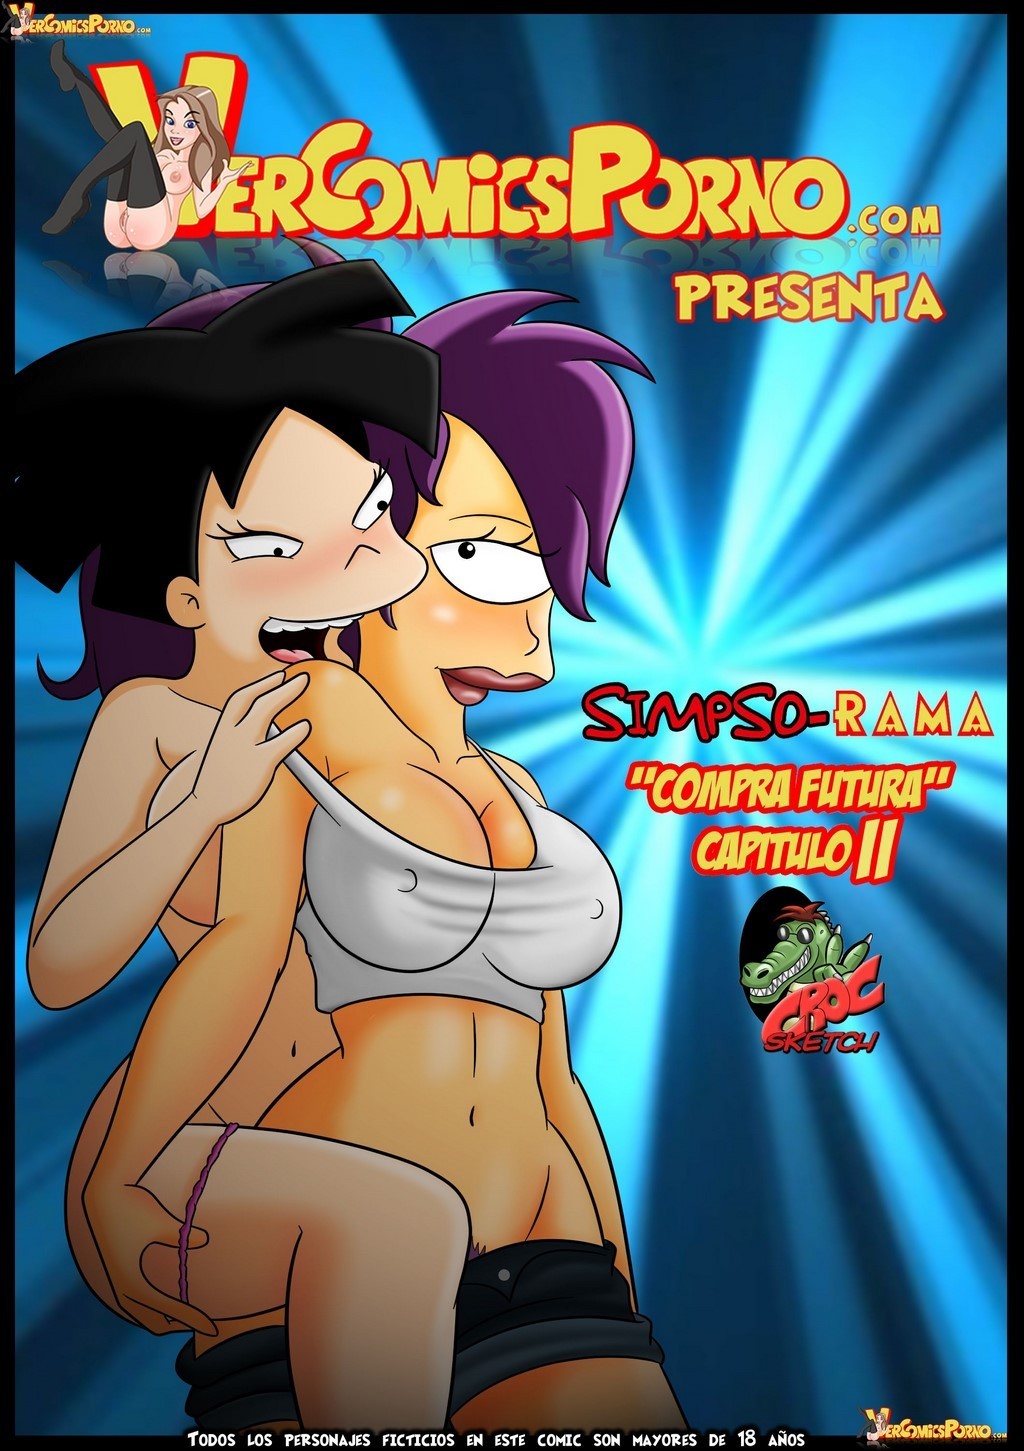 SimpsoRama-01.jpg comic porno